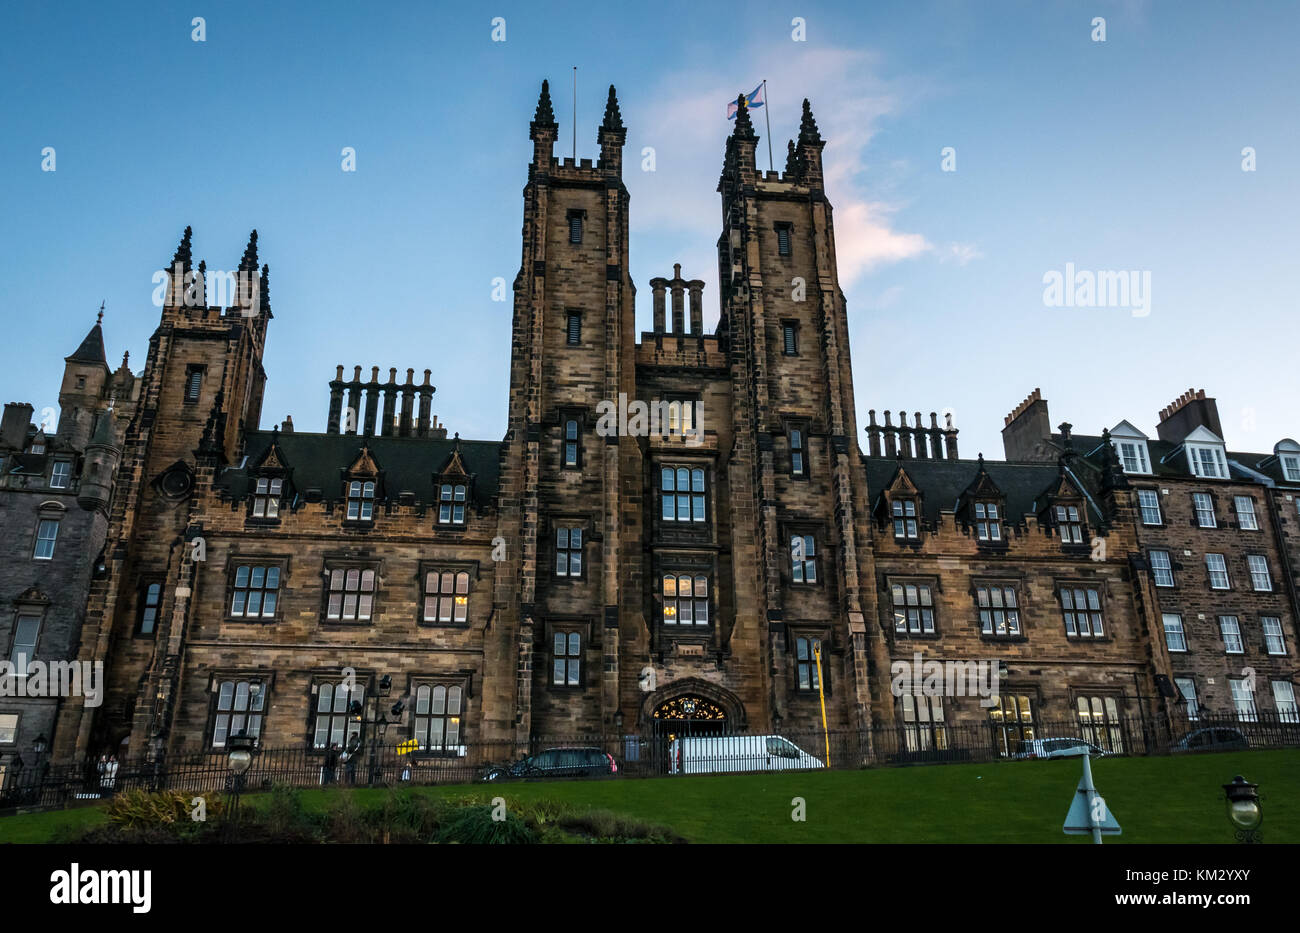 Nouveau Collège, salle de l'Assemblée, le monticule, Edinburgh Fringe Festival, lieu d'assemblée générale de l'Église d'Écosse, construit par David Bryce, Ecosse, Royaume-Uni Banque D'Images